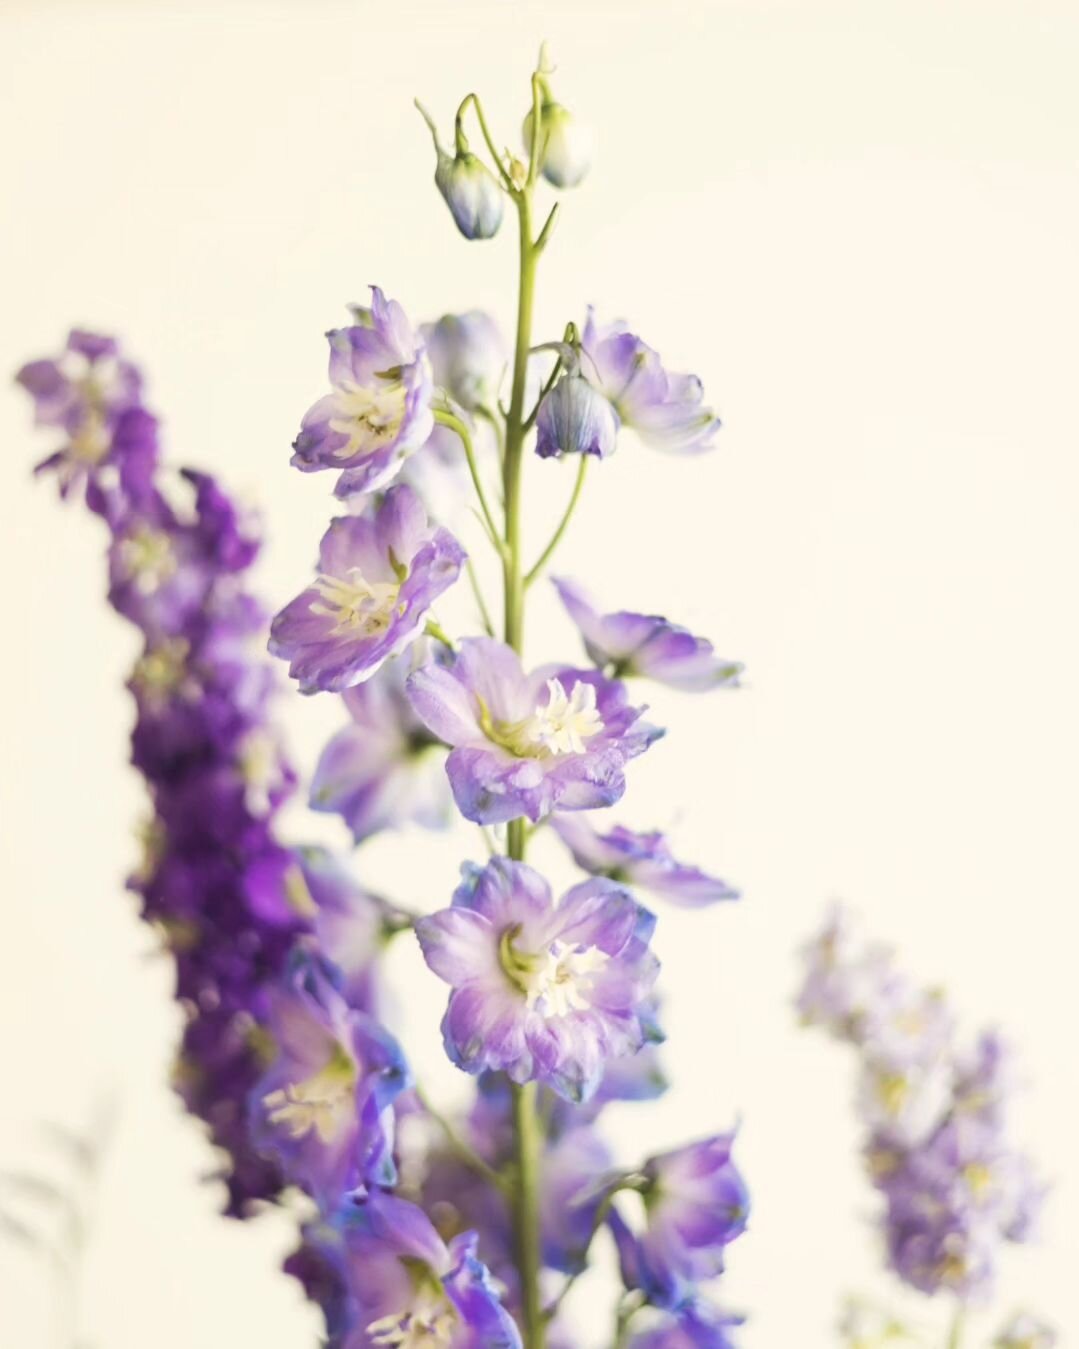 Delphinium violet 🪻
.
.
.
#photographie #fleurs #floral #photofleur